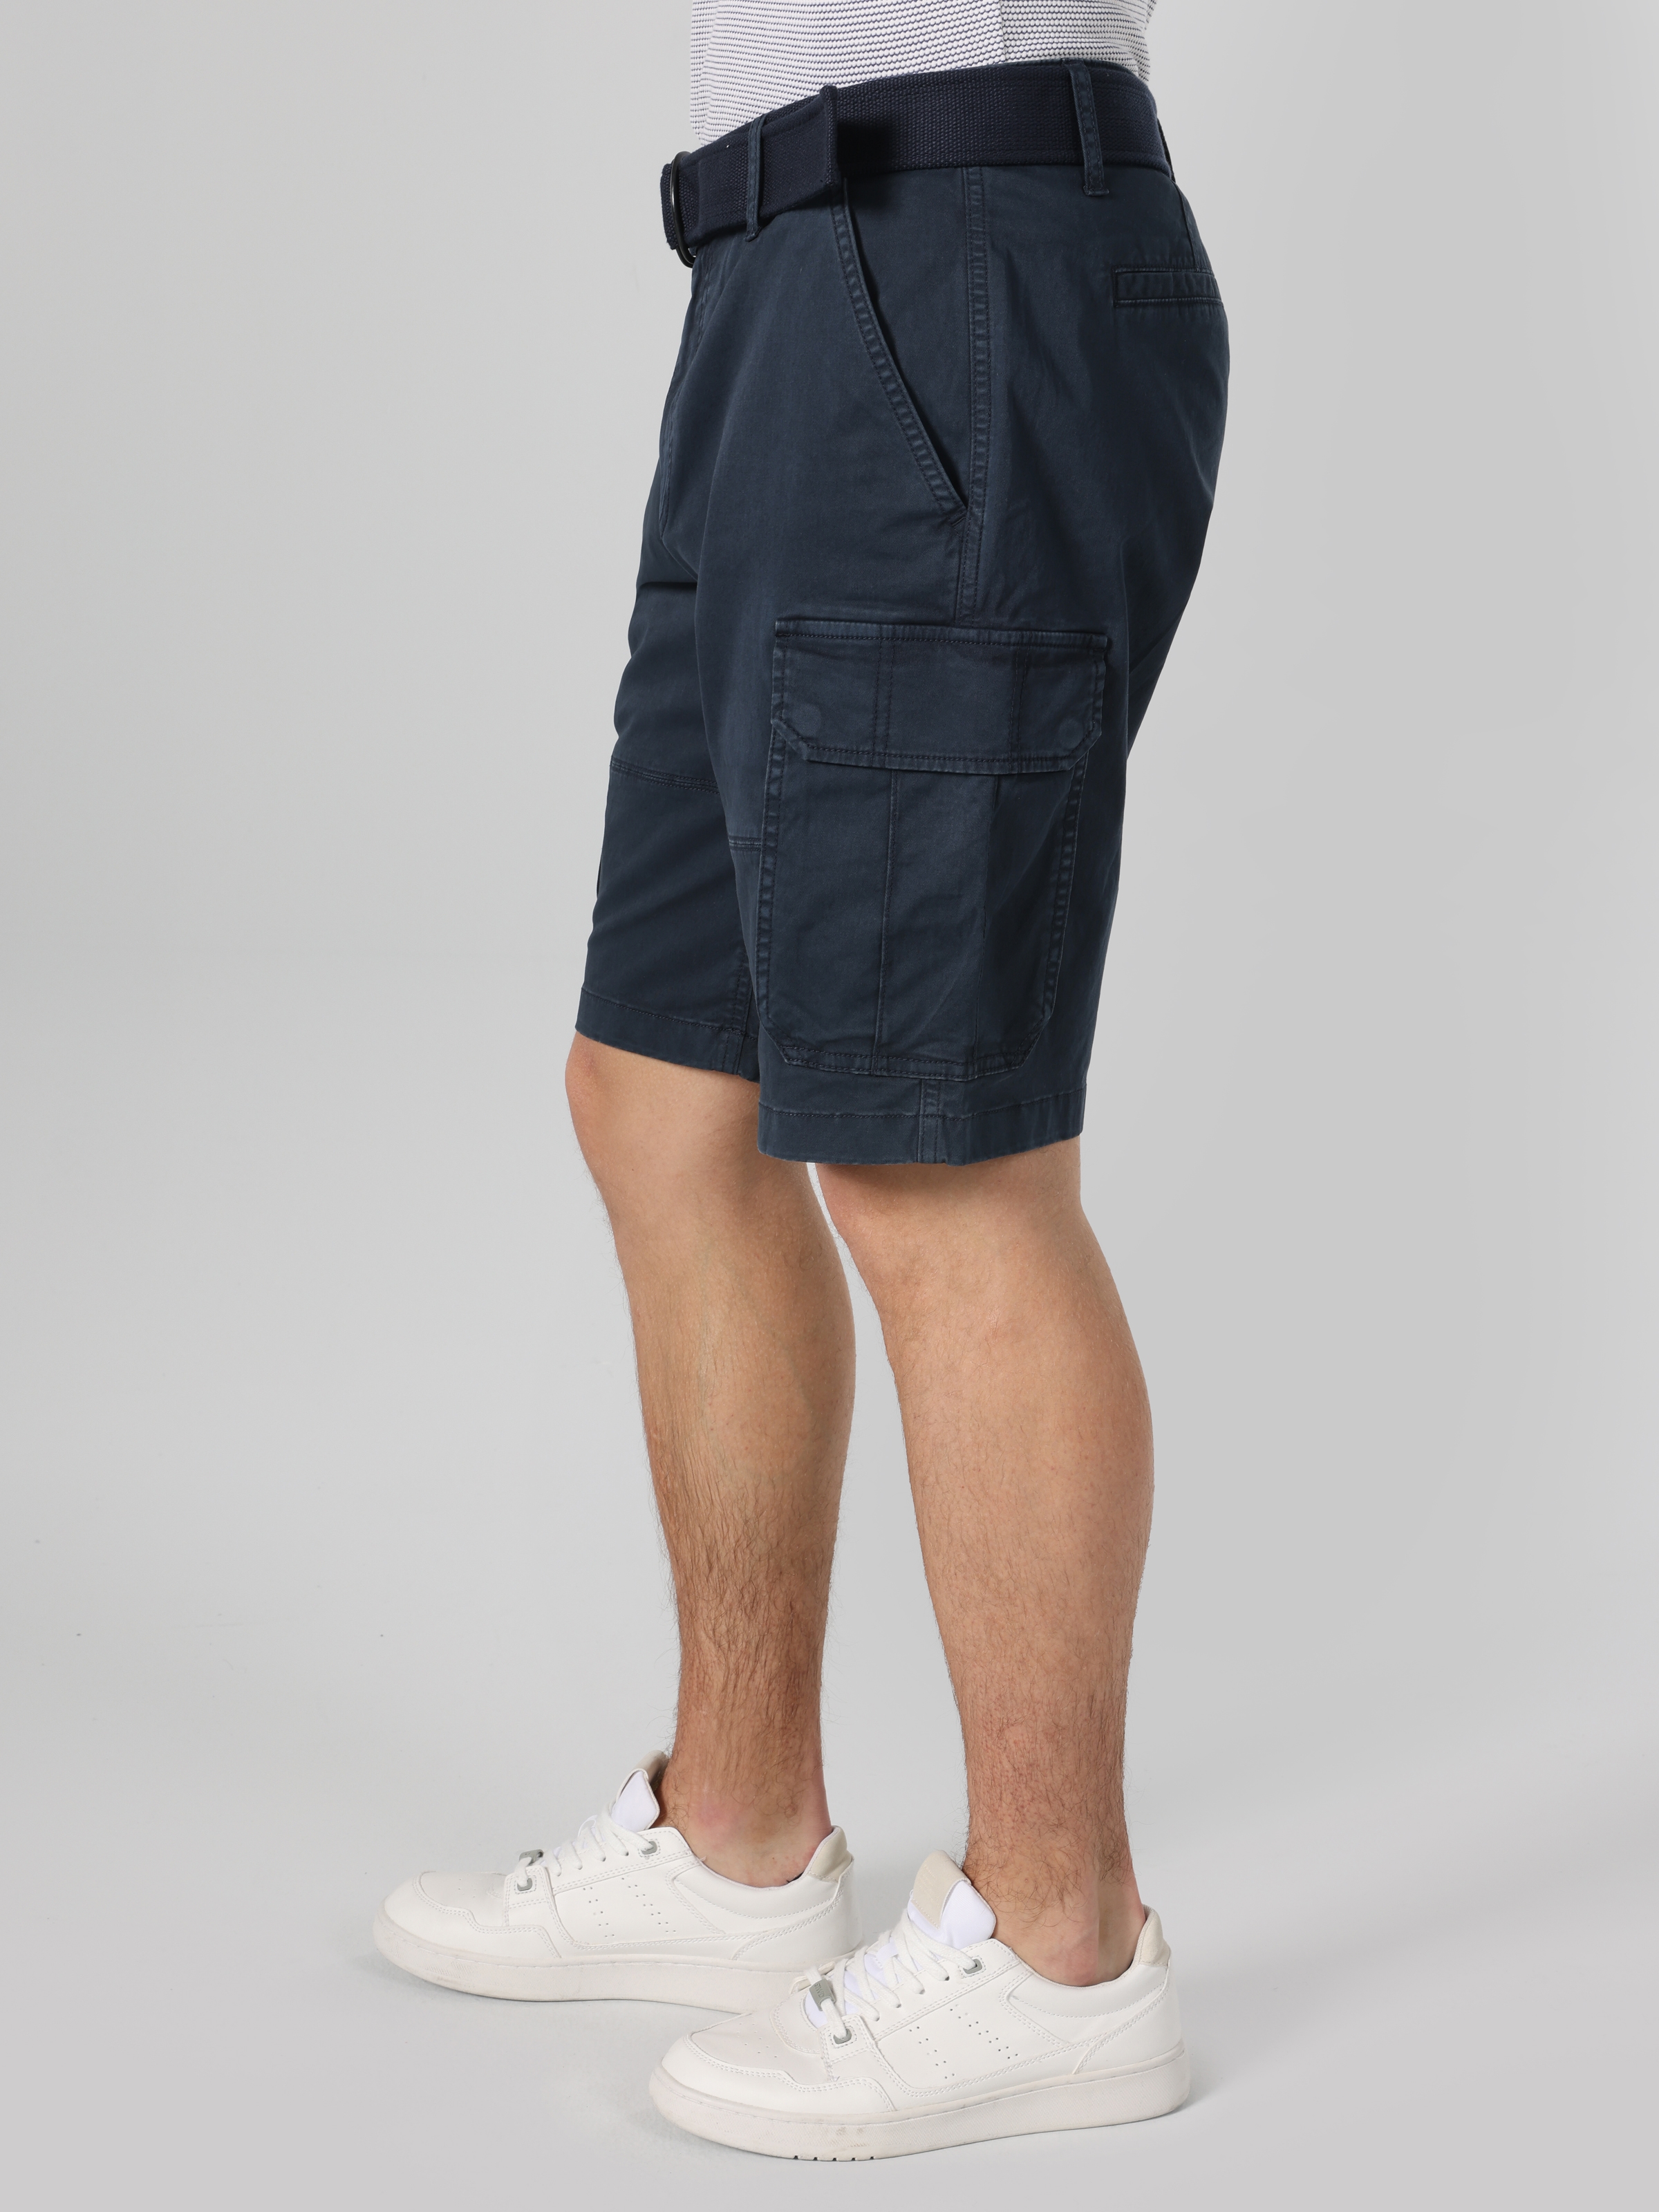 Afficher les détails de Short Homme Bleu Marine Coupe Regular Taille Moyenne